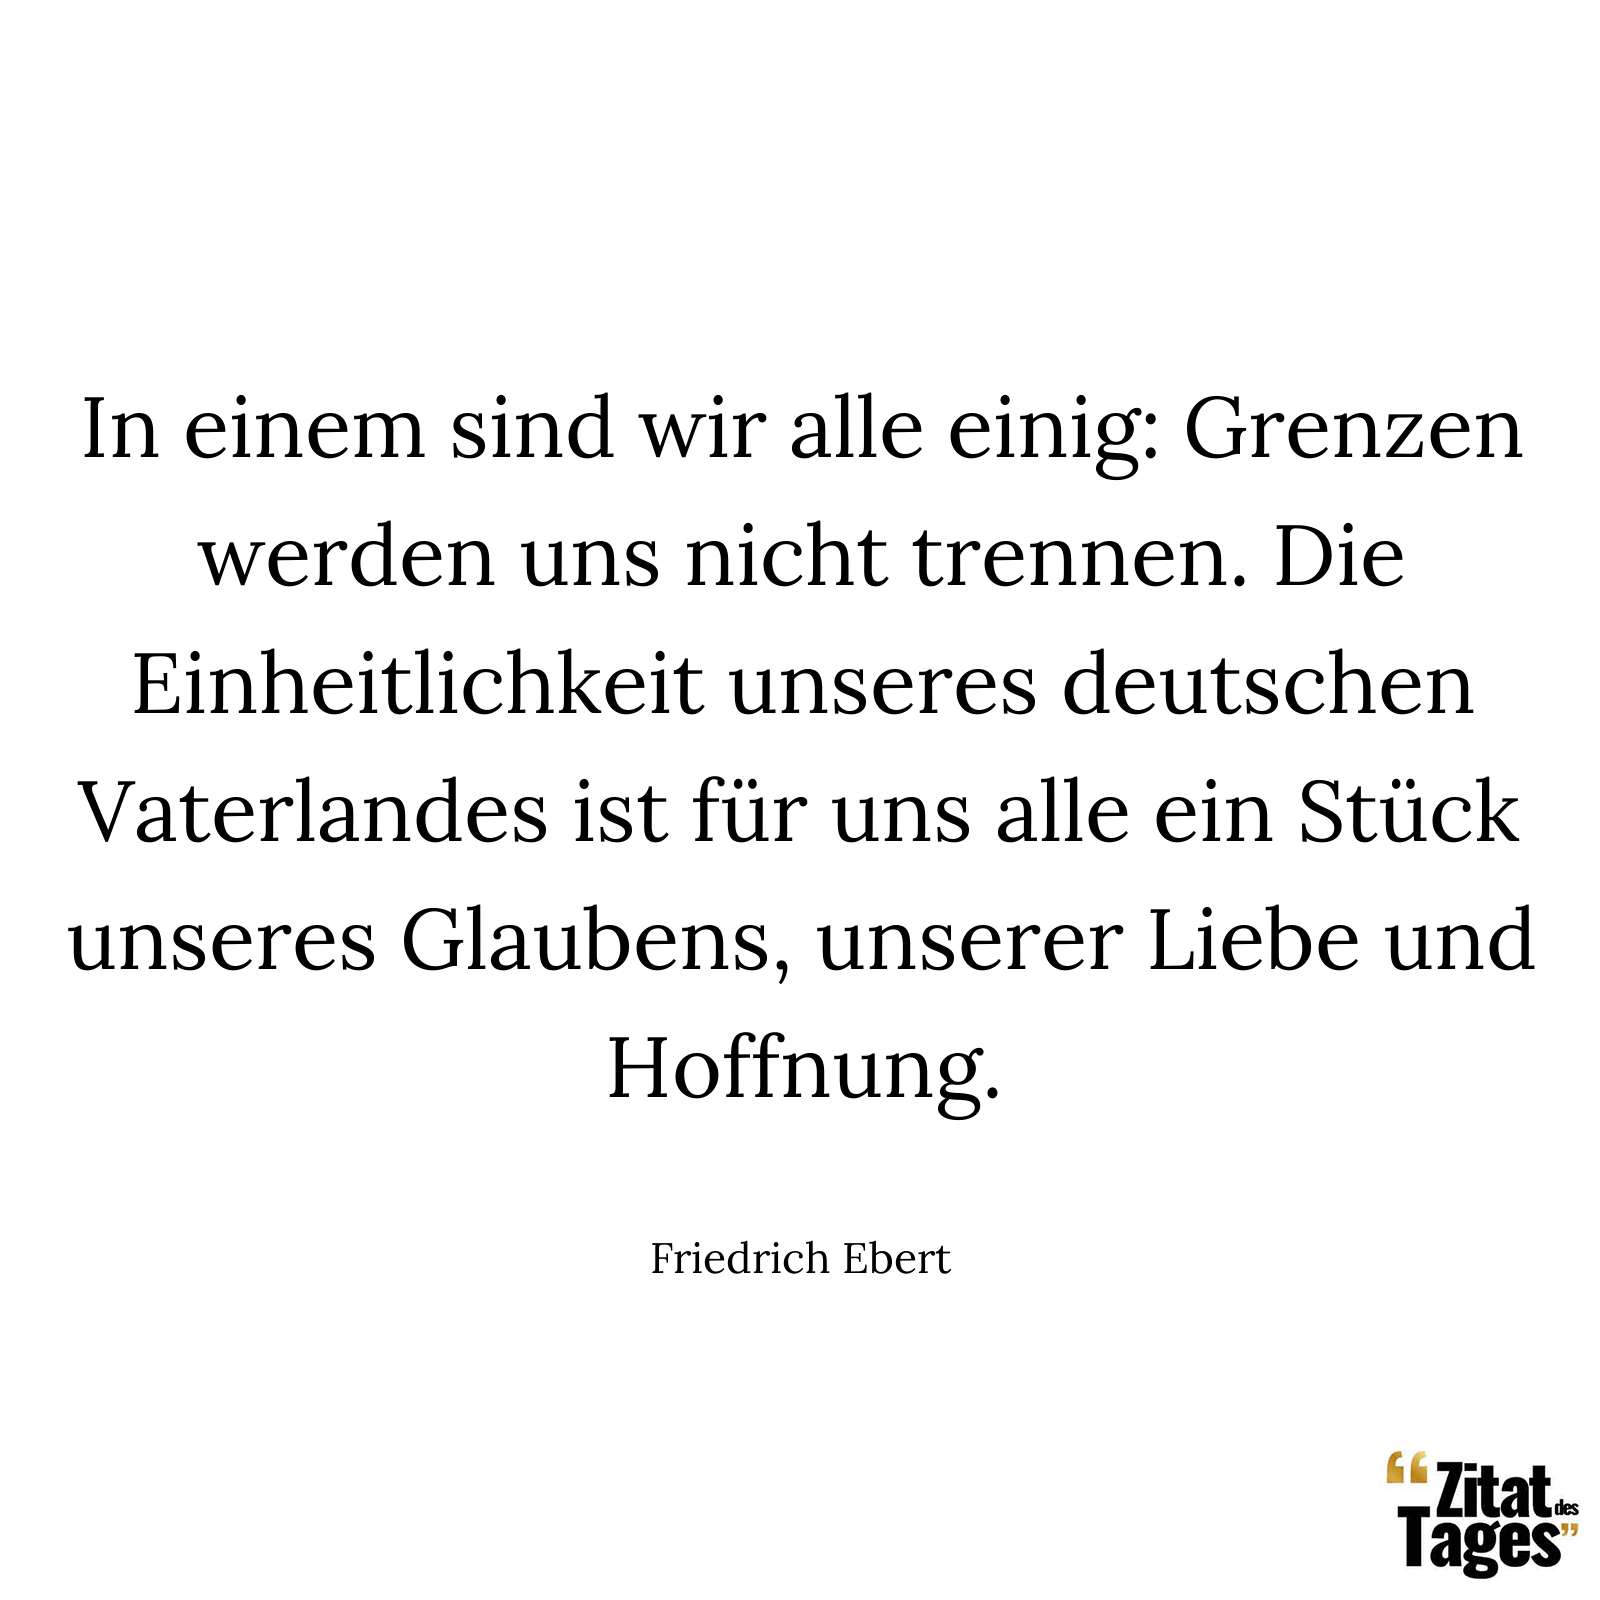 In einem sind wir alle einig: Grenzen werden uns nicht trennen. Die Einheitlichkeit unseres deutschen Vaterlandes ist für uns alle ein Stück unseres Glaubens, unserer Liebe und Hoffnung. - Friedrich Ebert